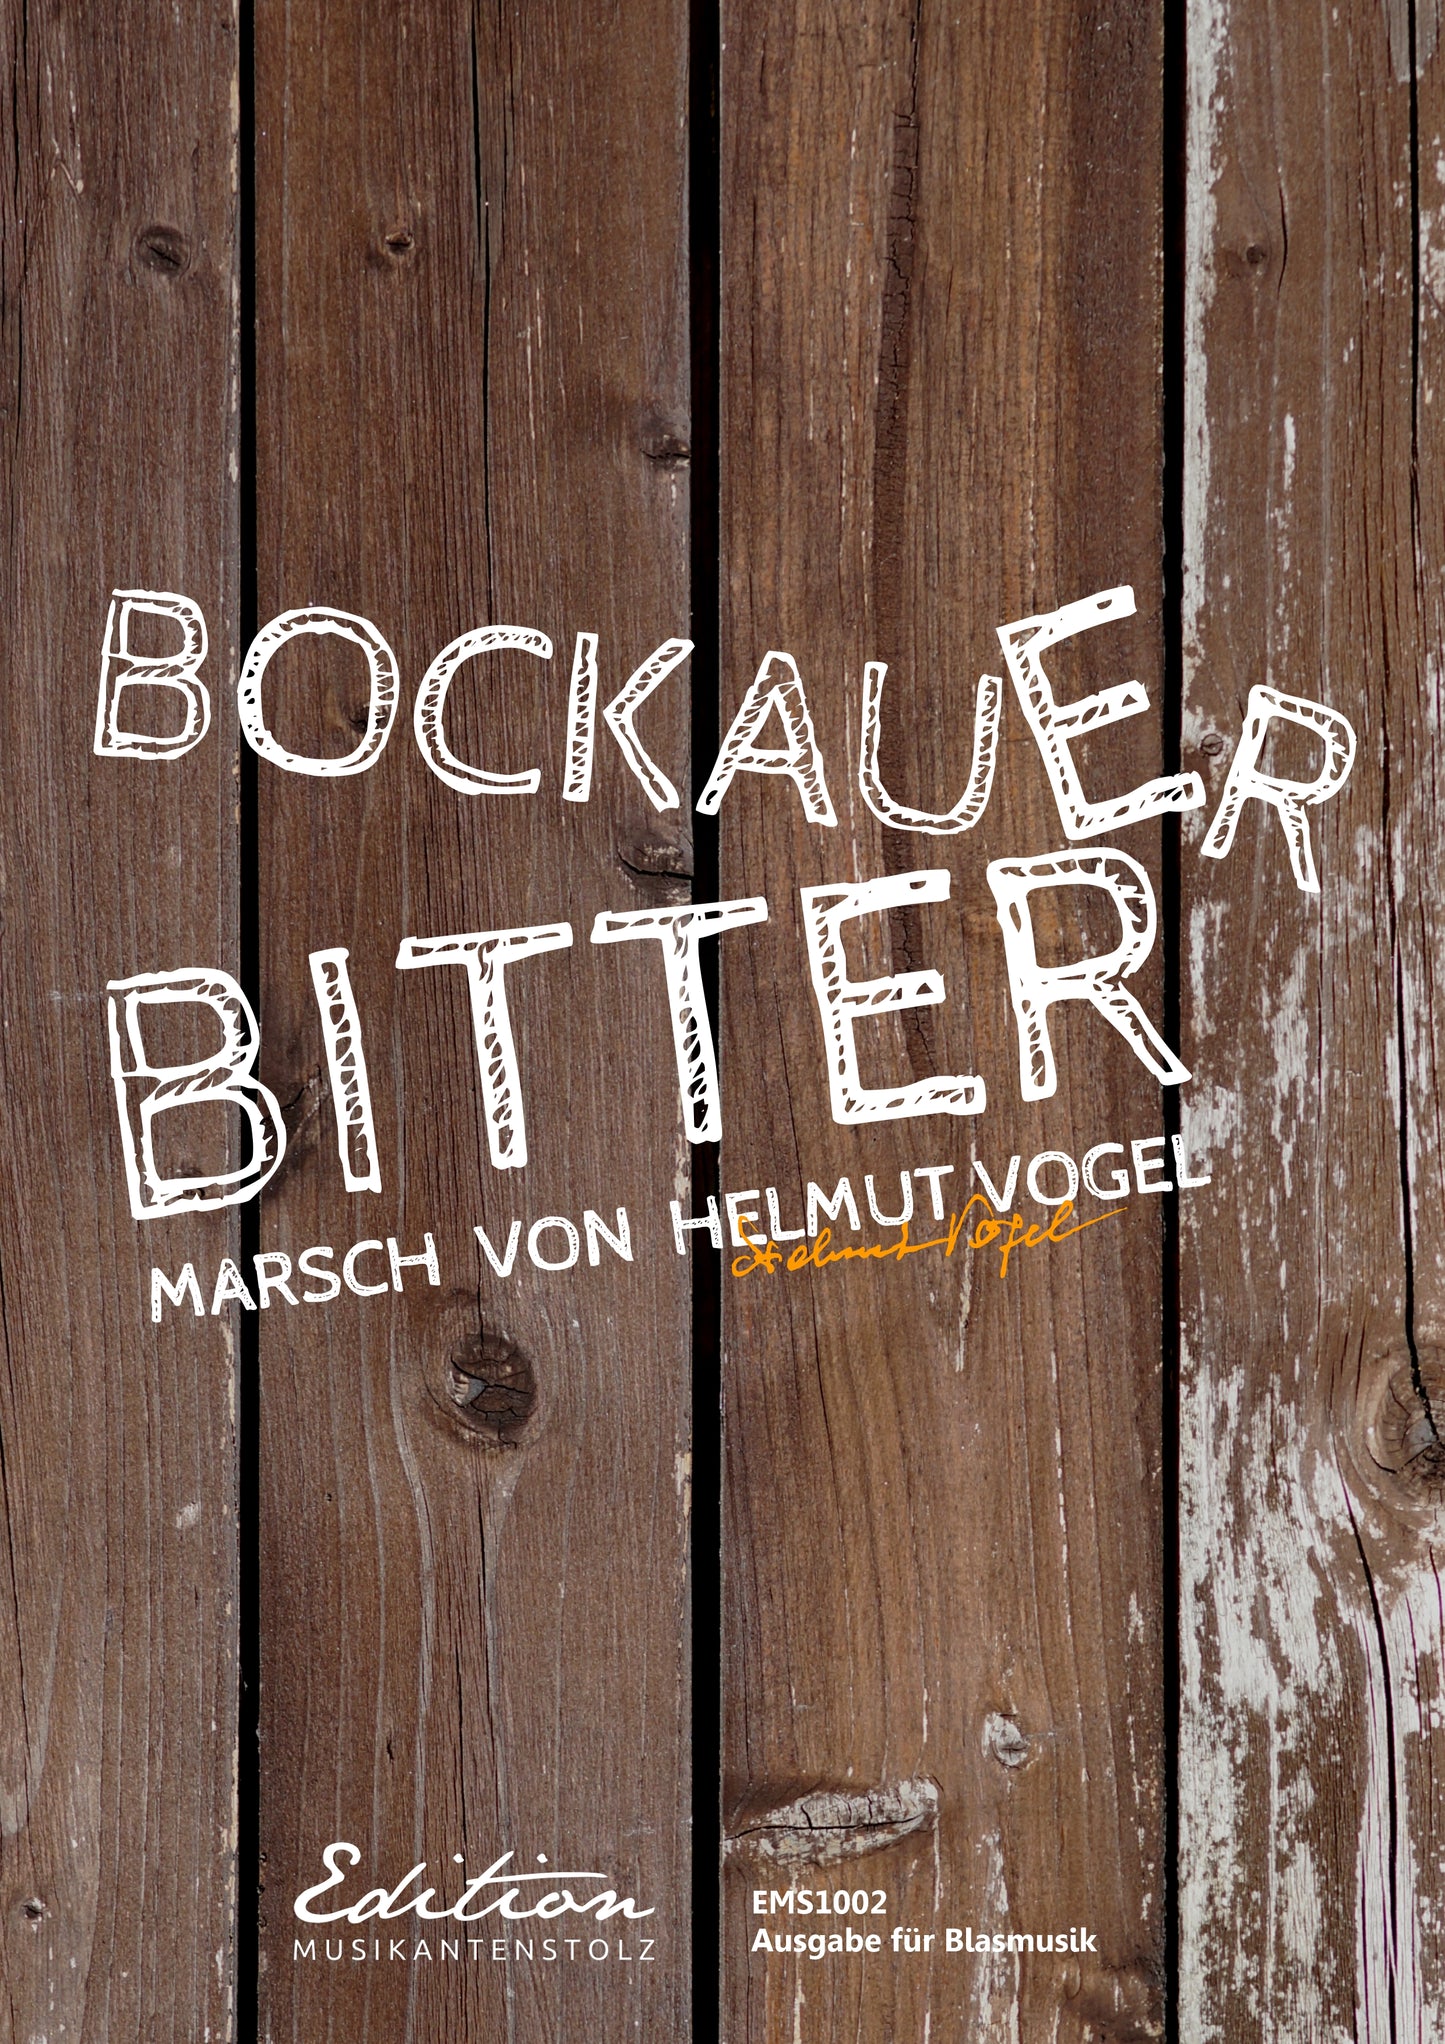 Bockauer Bitter